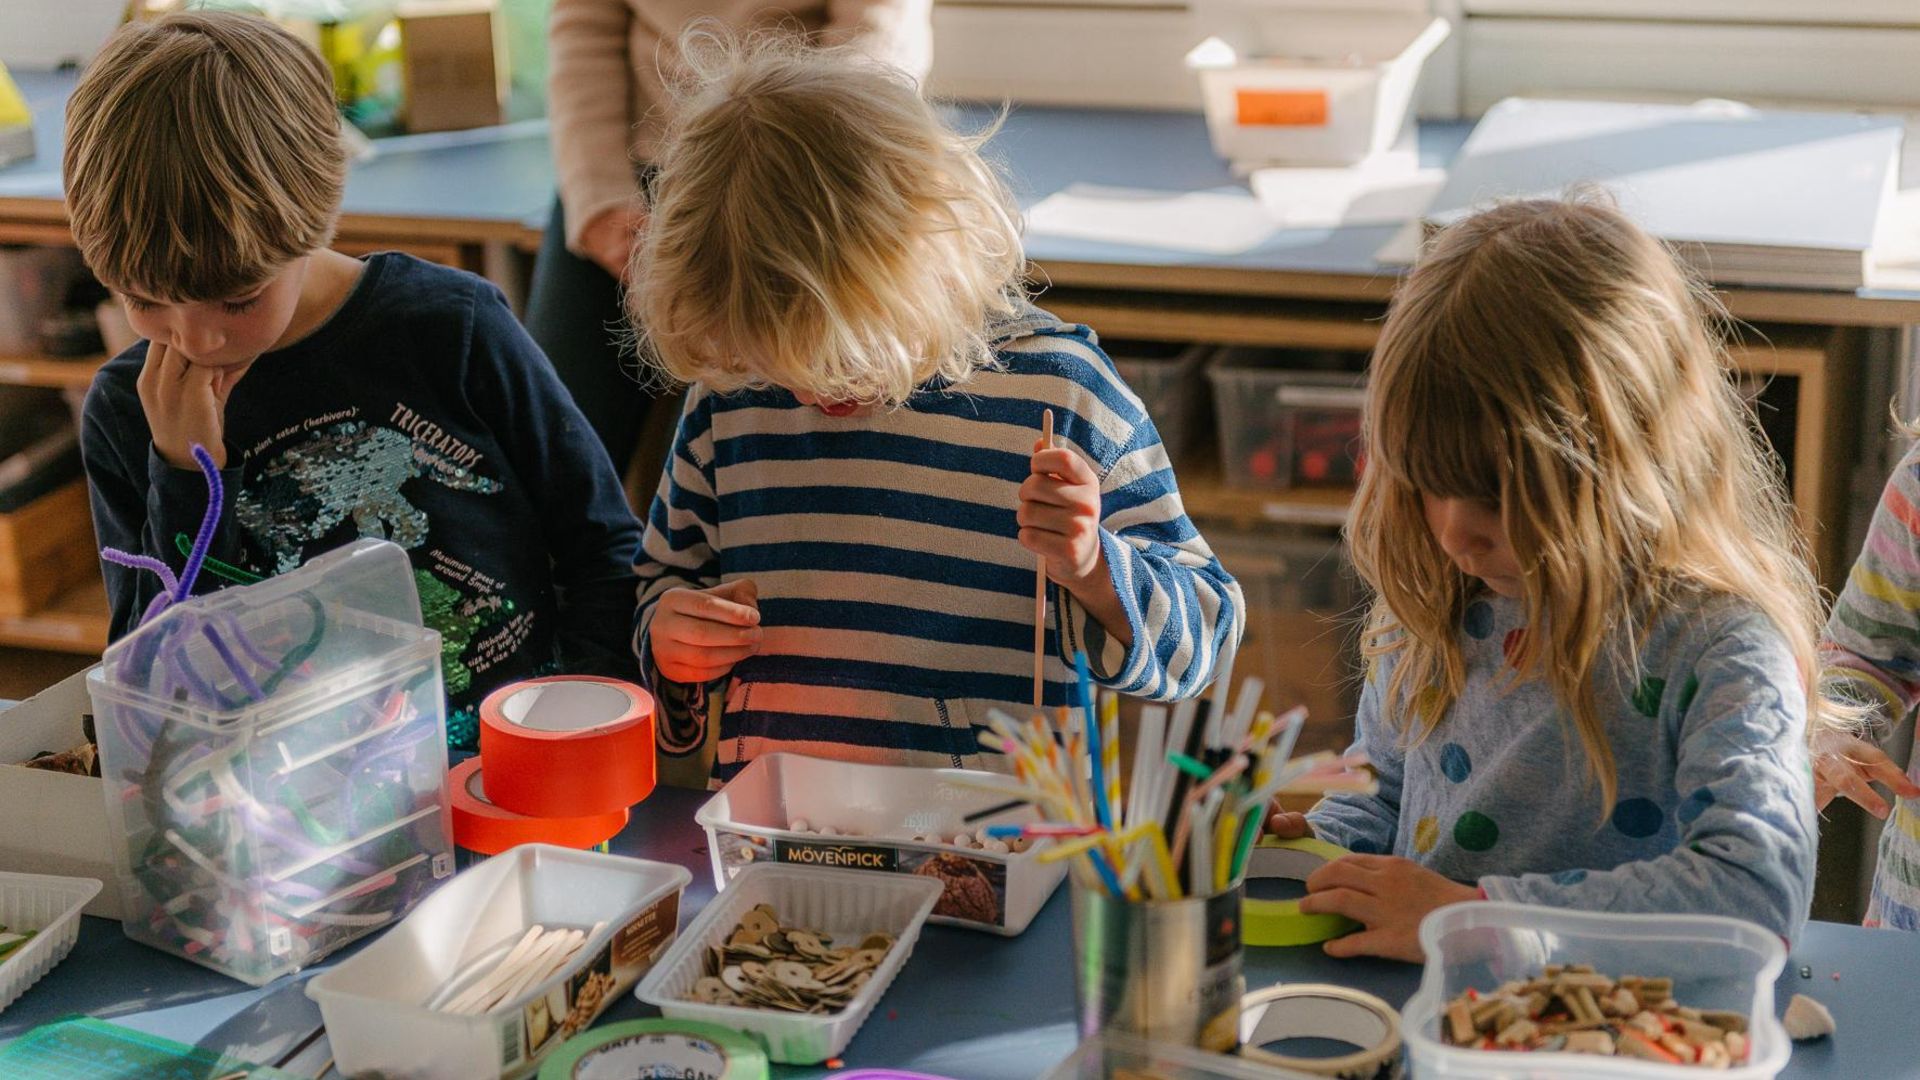 Foto: Drei Kinder spielen mit Bastelmaterialien auf dem Tisch vor ihnen.